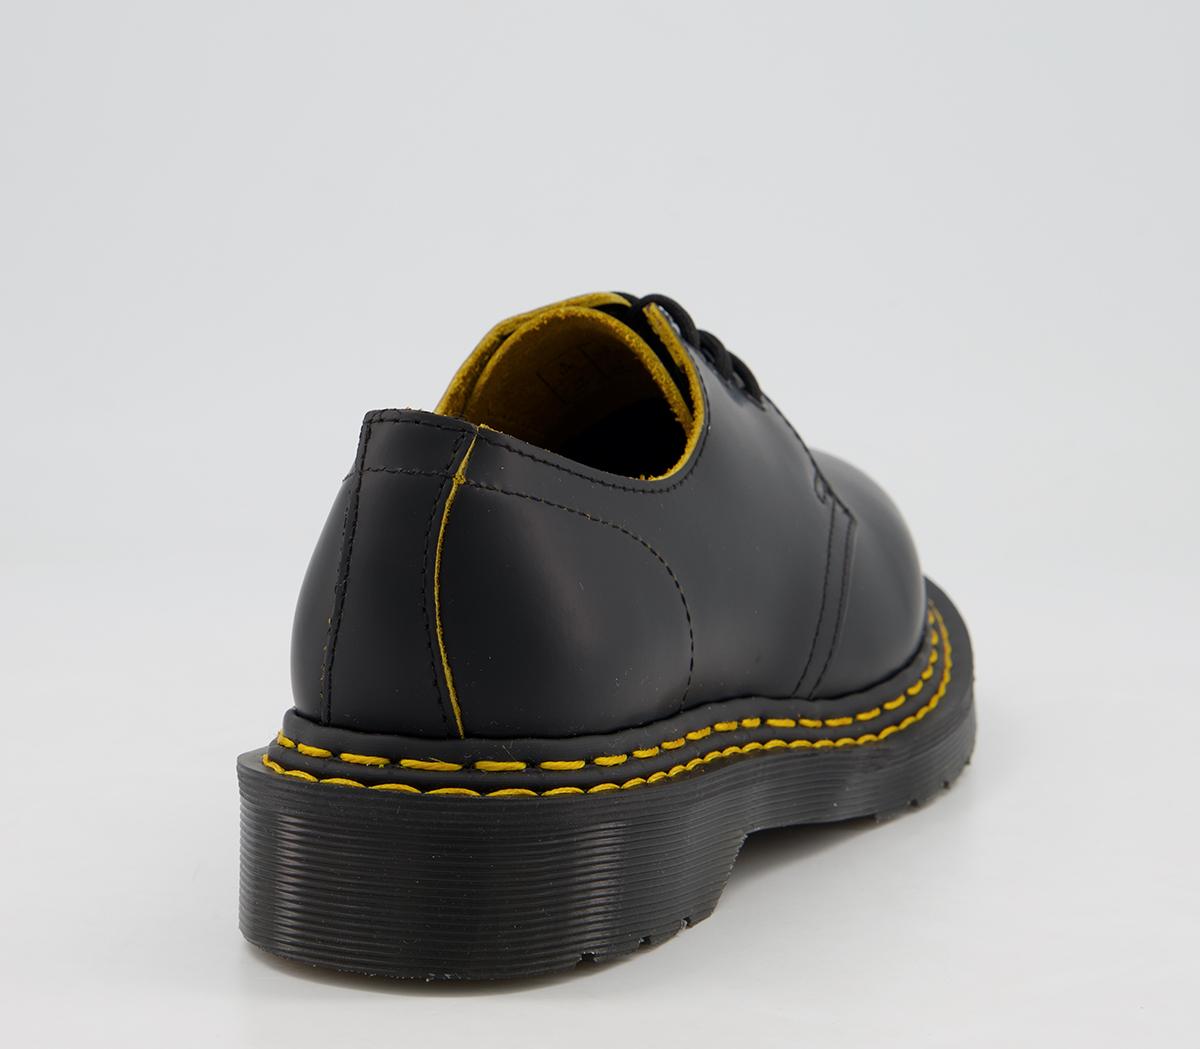 Dr. Martens 1461 Bex Ds Shoes Black - Flats